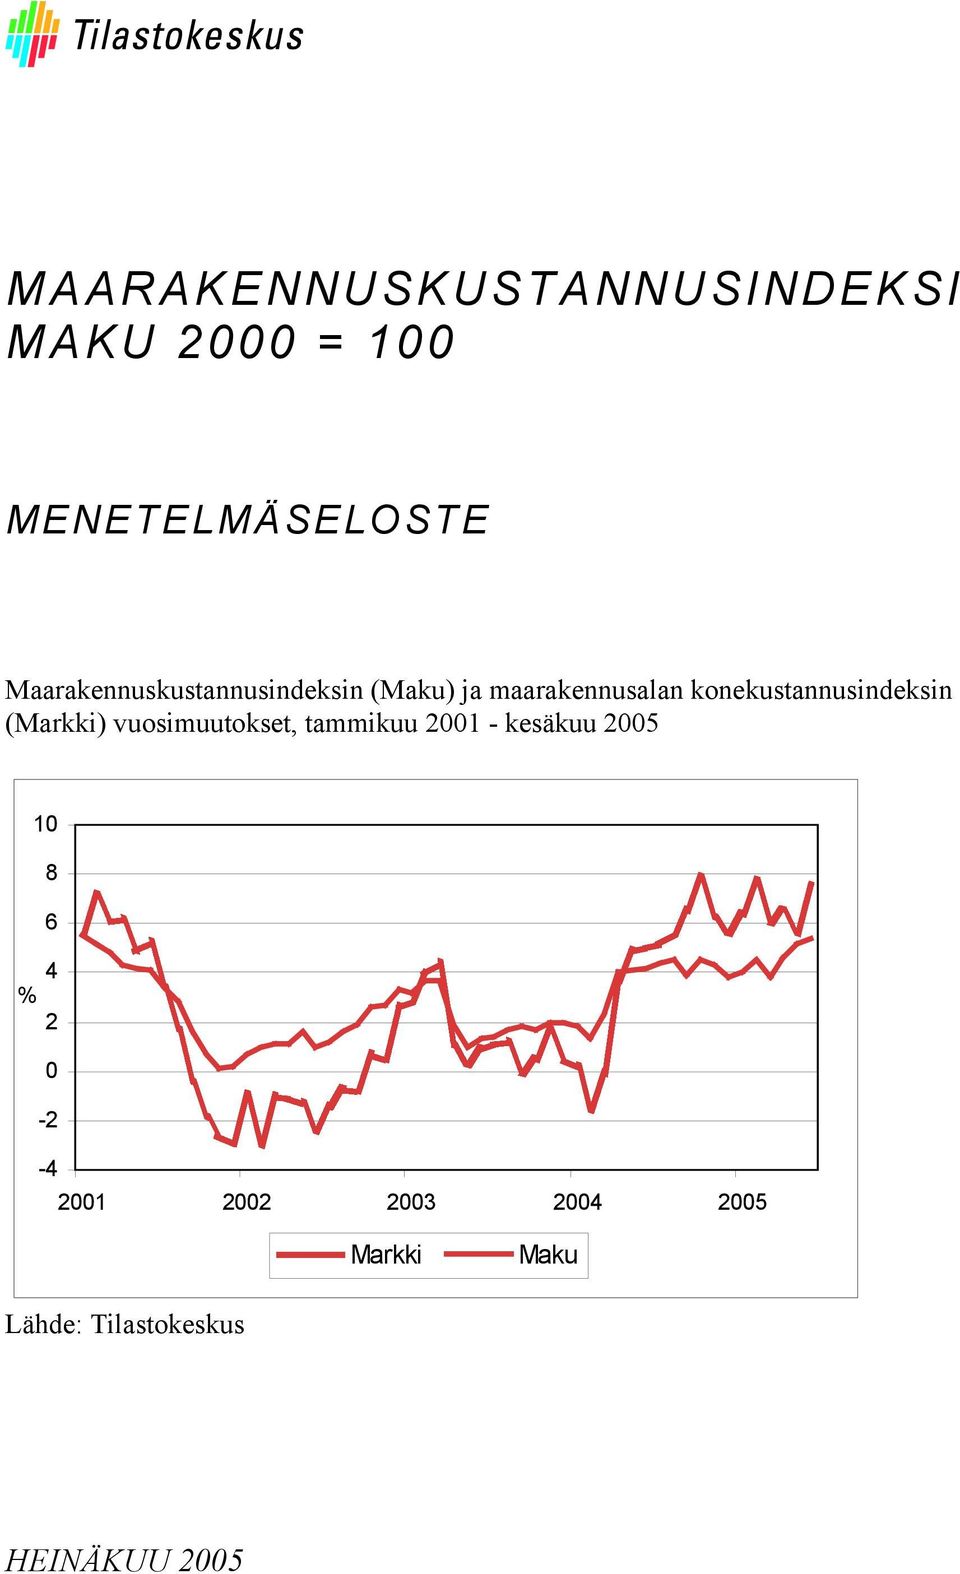 konekustannusindeksin (Markki) vuosimuutokset, tammikuu 2001 - kesäkuu